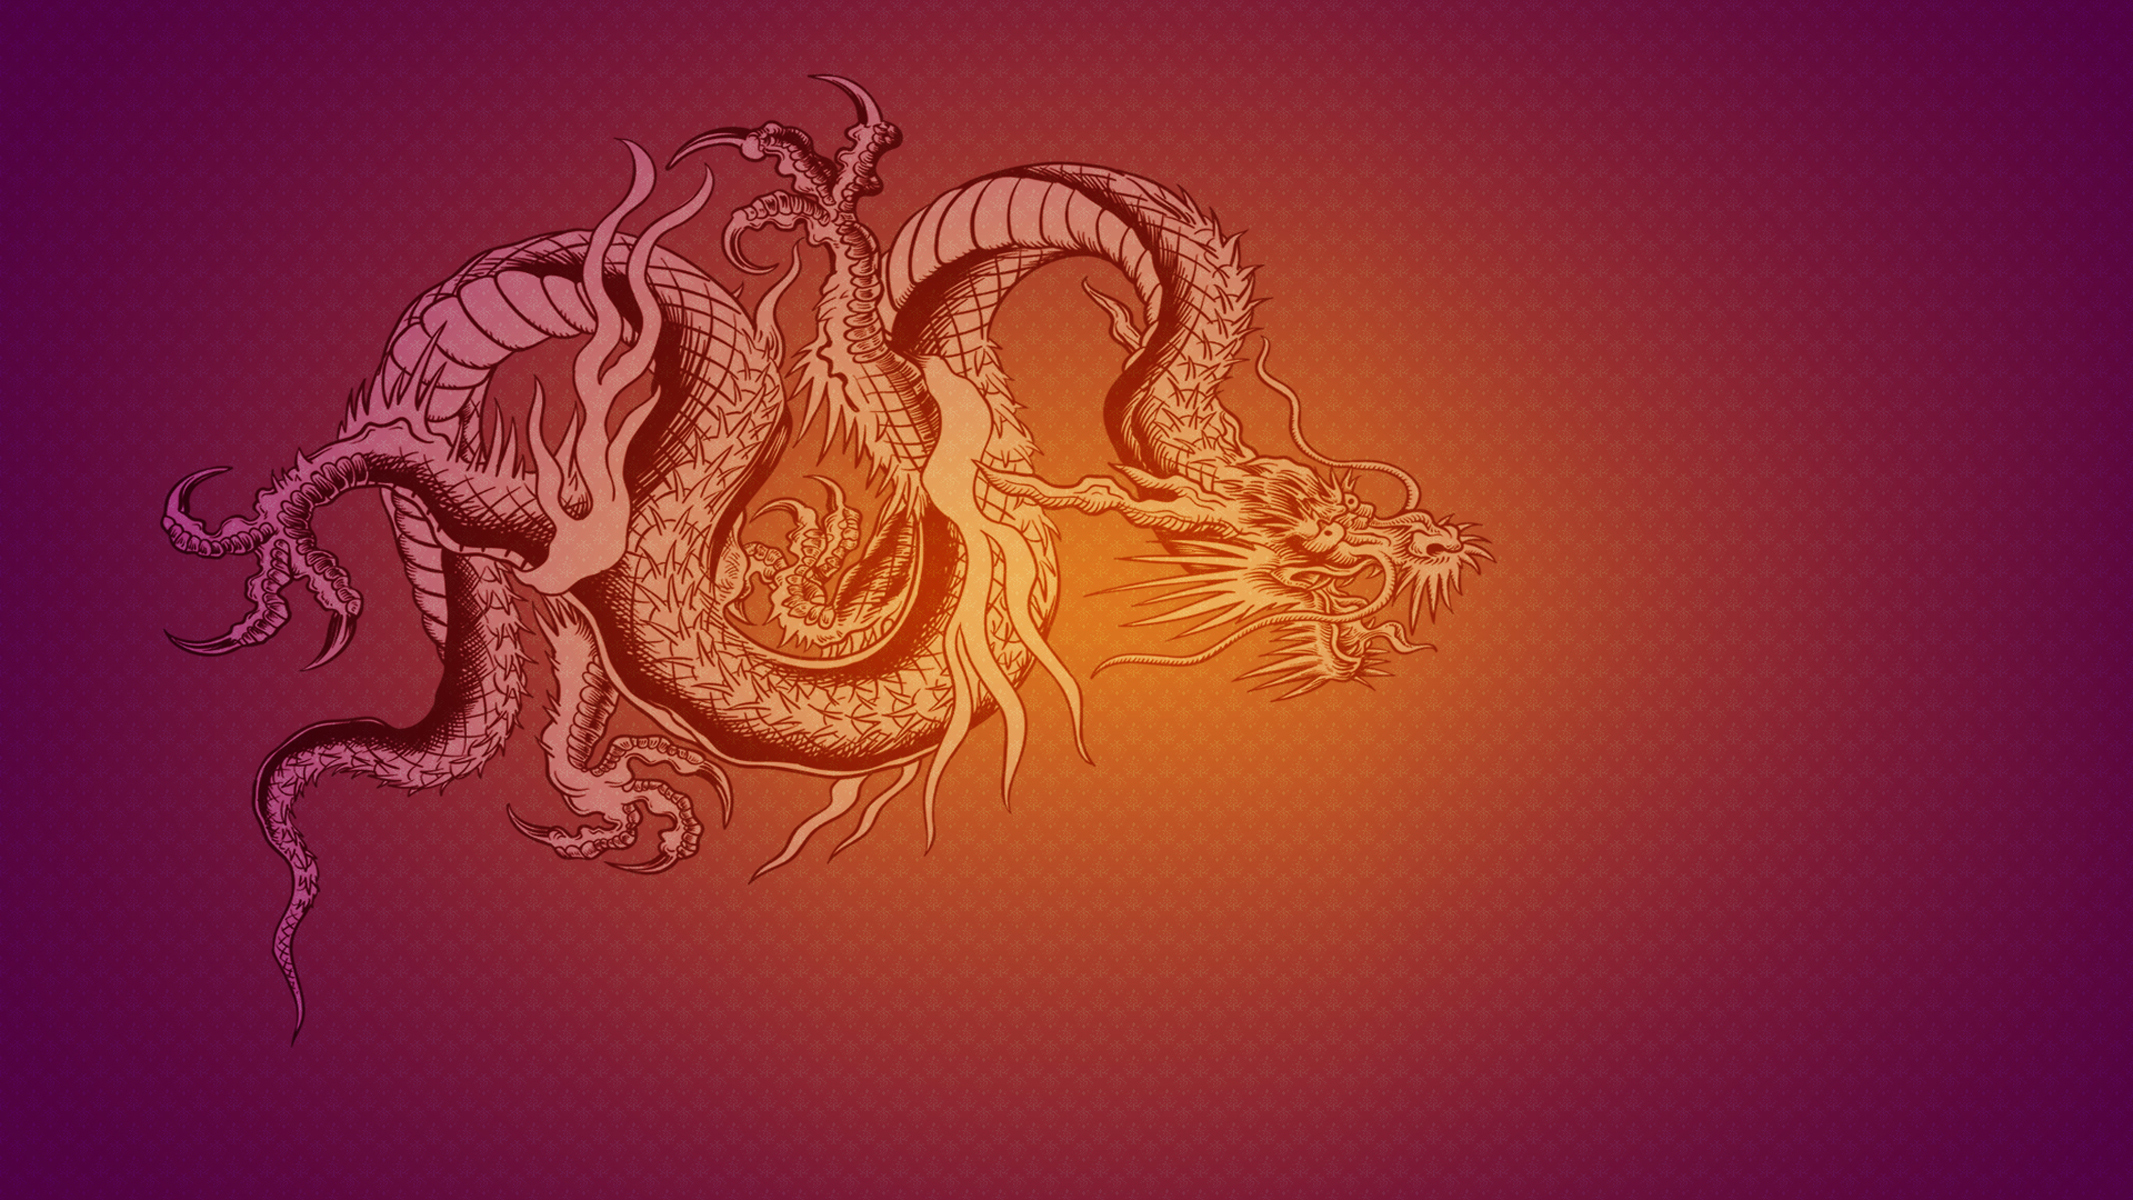 фэнтези дракон графика fantasy dragon graphics загрузить